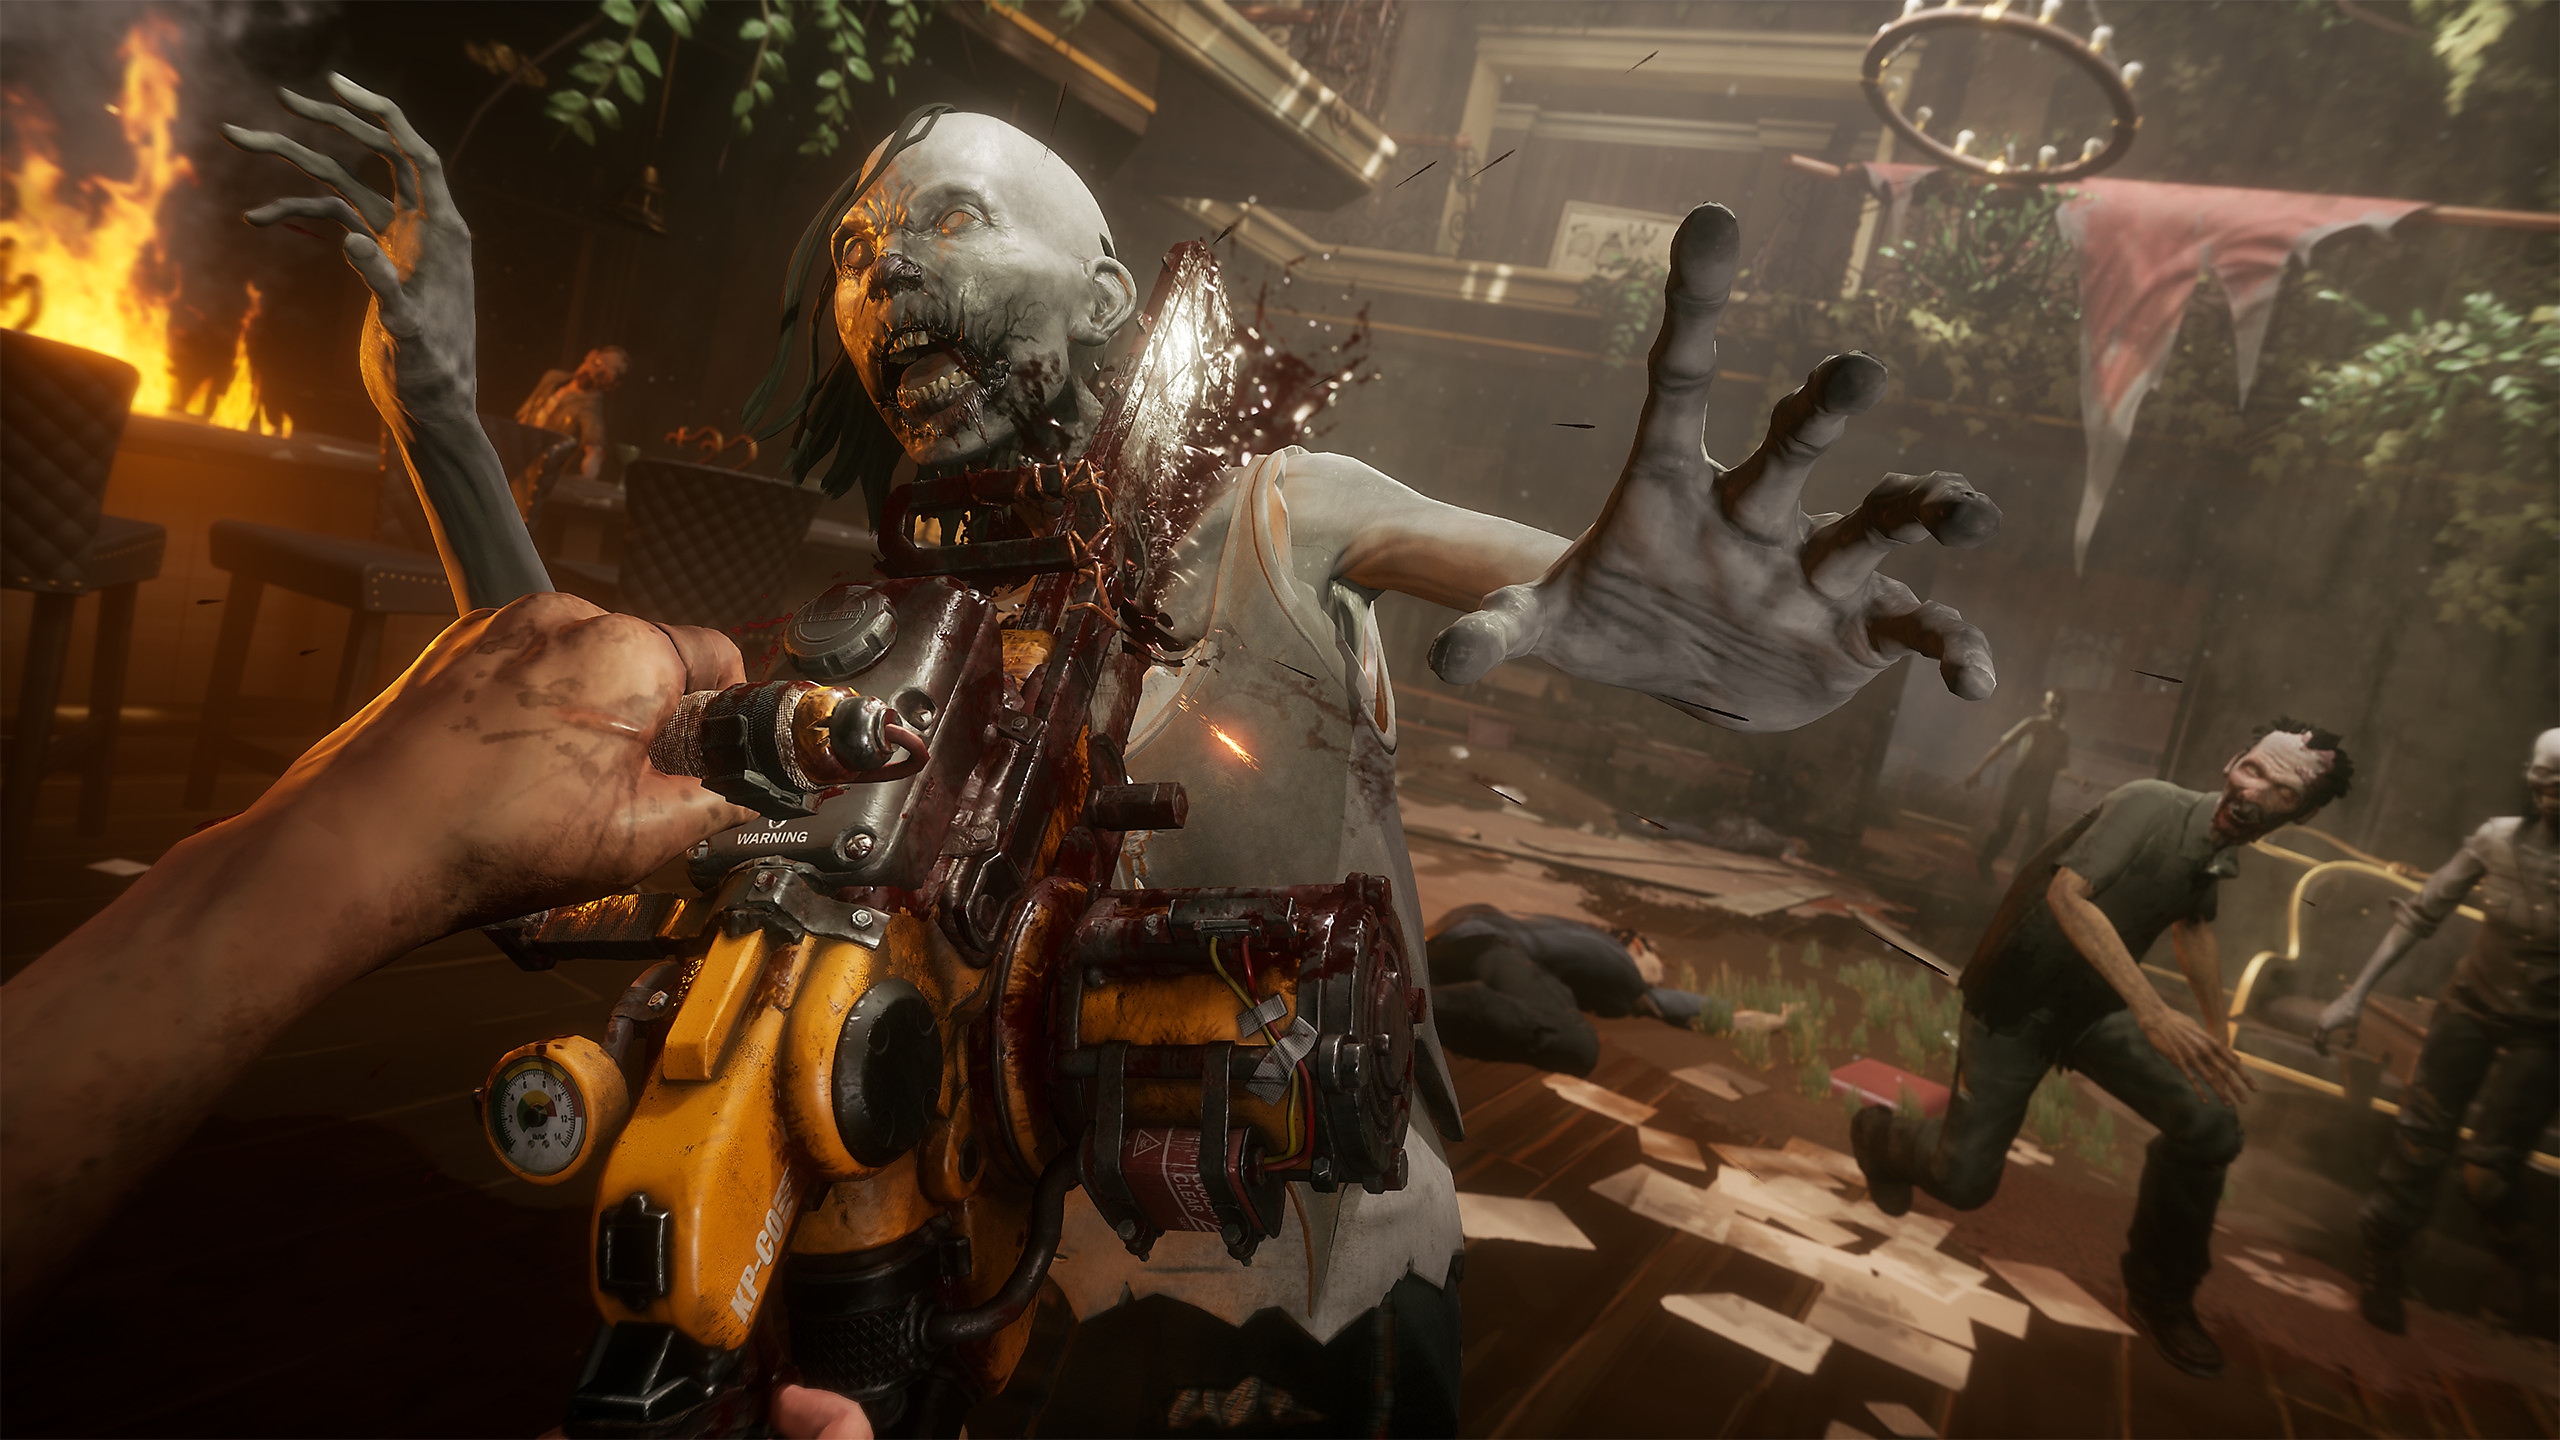 TWDSS Chapter 2 Retribution-screenshot van een zombie die wordt gedood met een kettingzaag